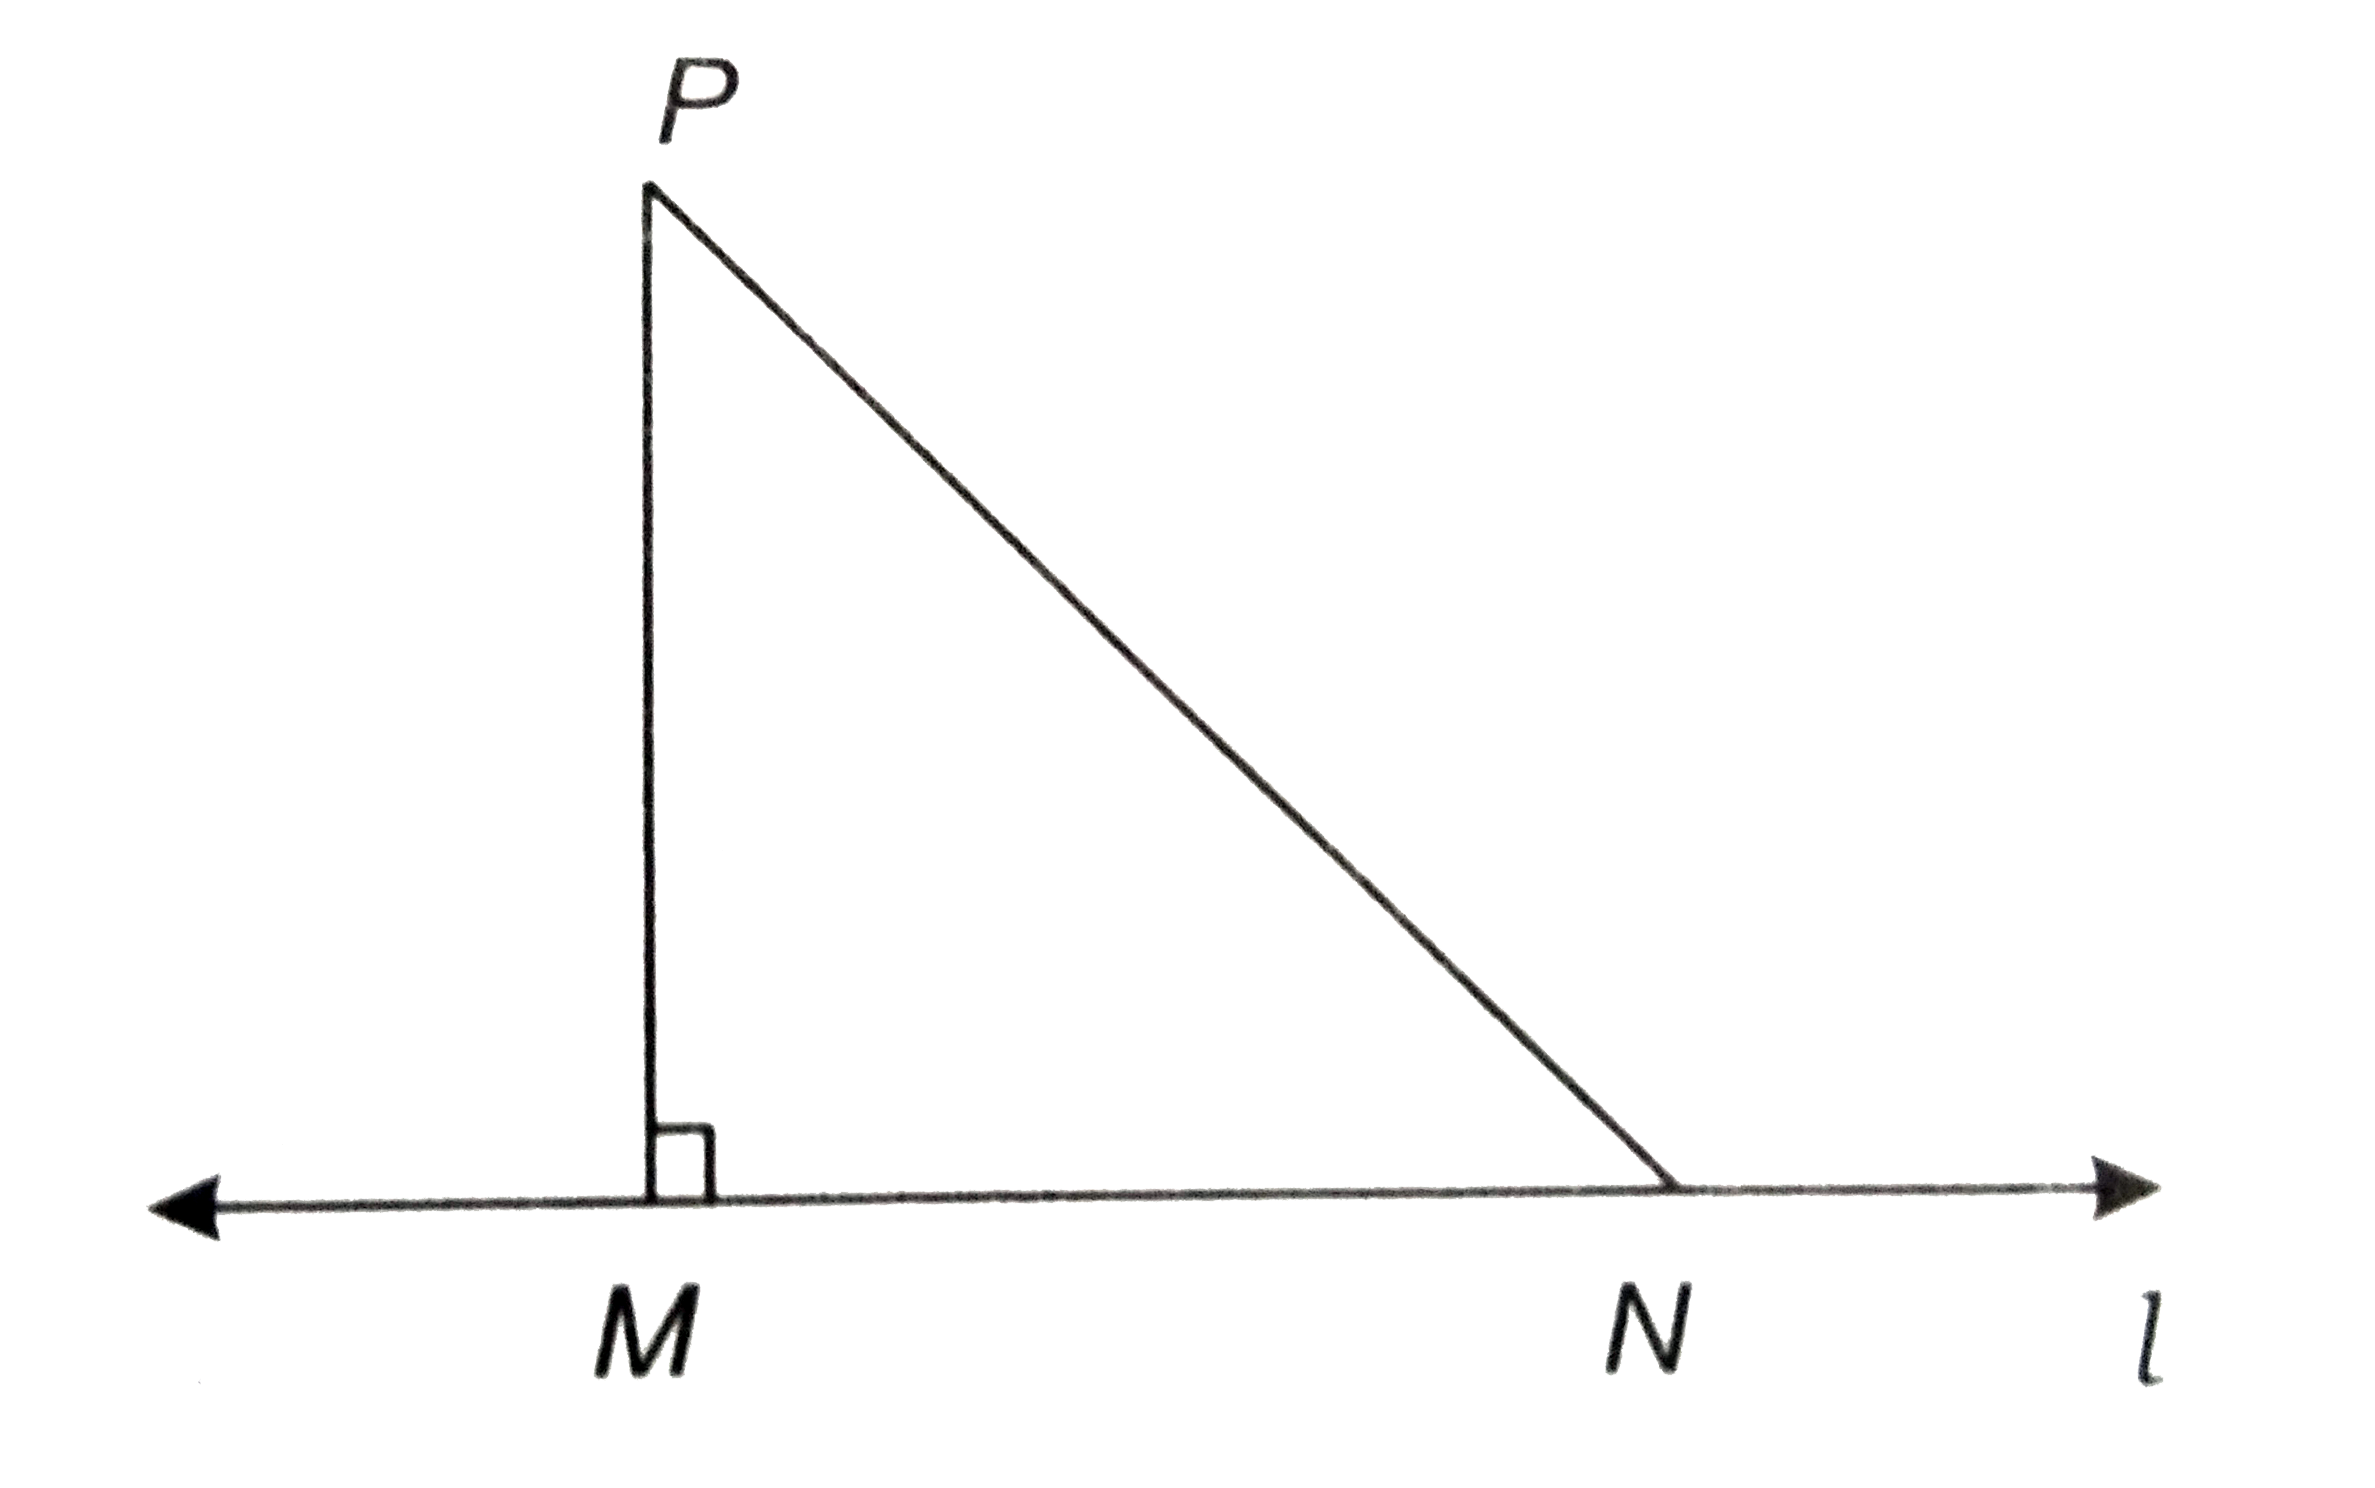 दर्शाइए कि एक रेखा पर एक दिए हुए बिन्दु से, जो उस रेखा पर स्थित नहीं है, जितने रेखाखण्ड खींचे जा सकते है उनमे लम्ब रेखाखण्ड सबसे छोटा होता है।